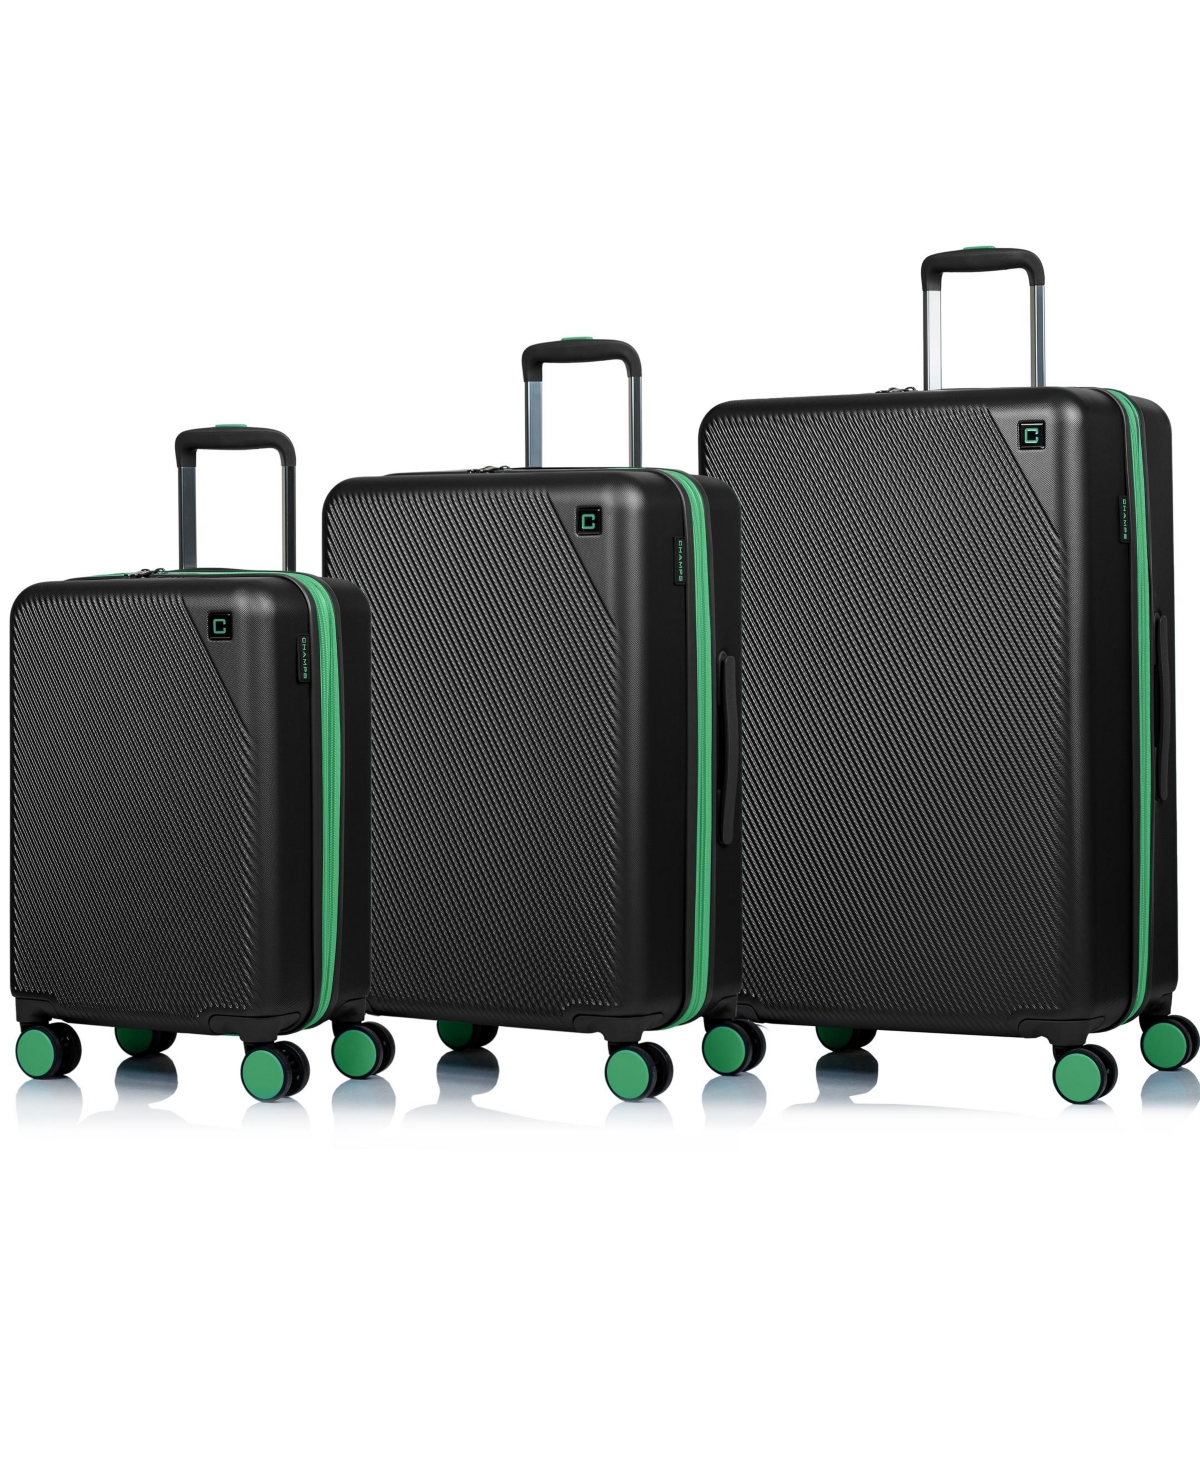 3-Piece Fresh Hardside Luggage Set - Gray